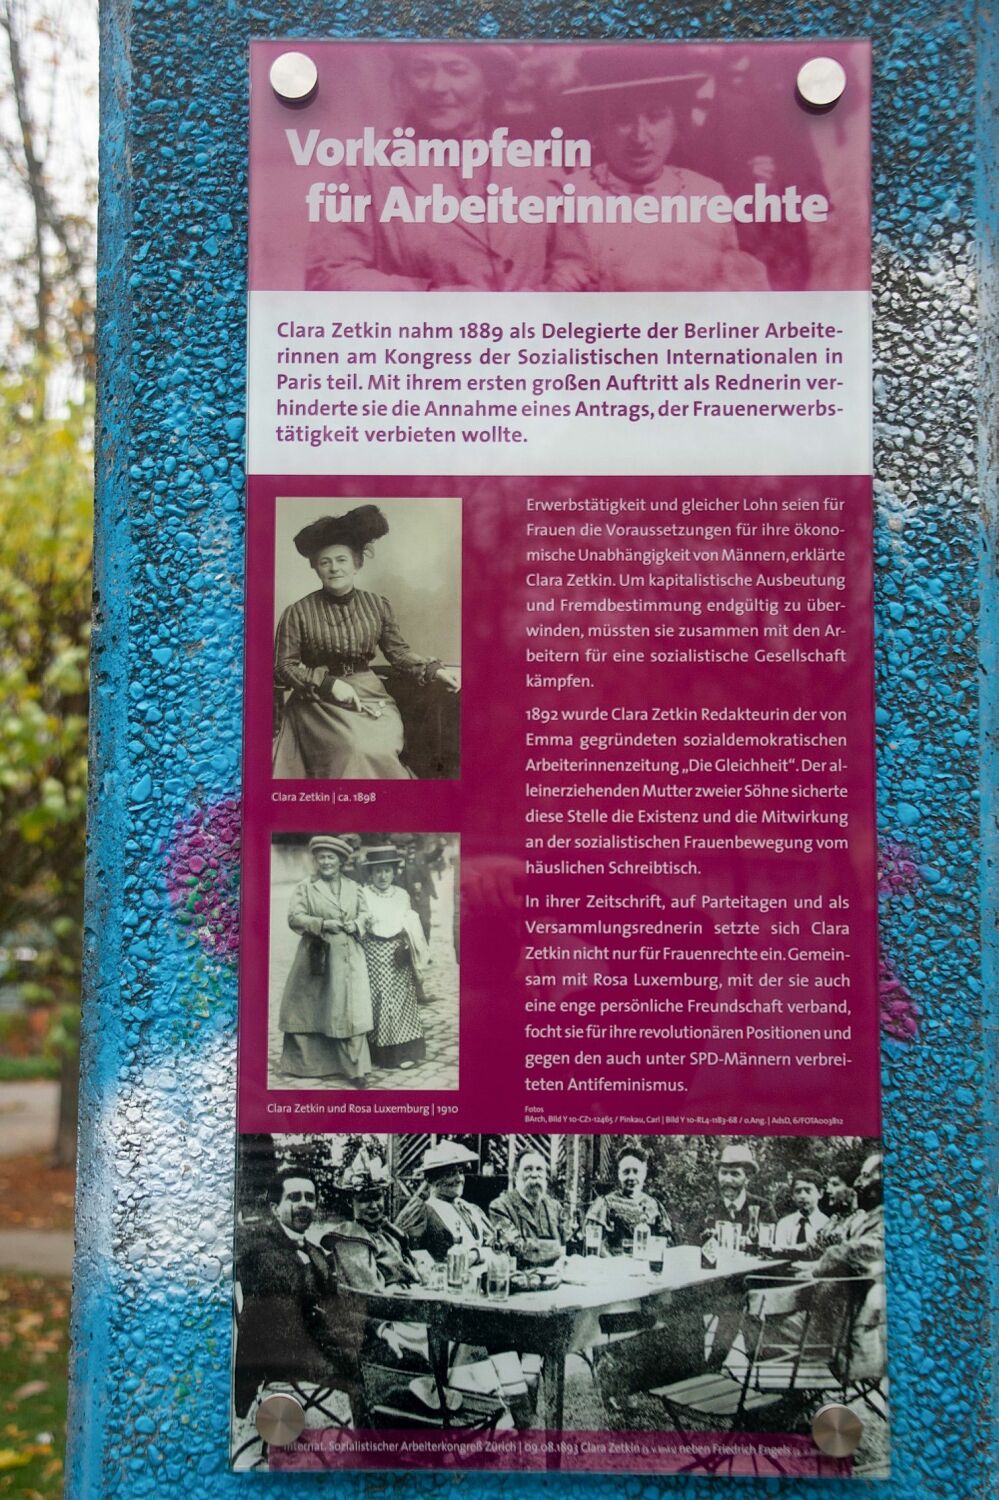 Neue Informationstafeln im Clara-Zetkin-Park in Marzahn-Nord enthüllt - 'Vorkämpferin der Arbeiterinnenrechte'